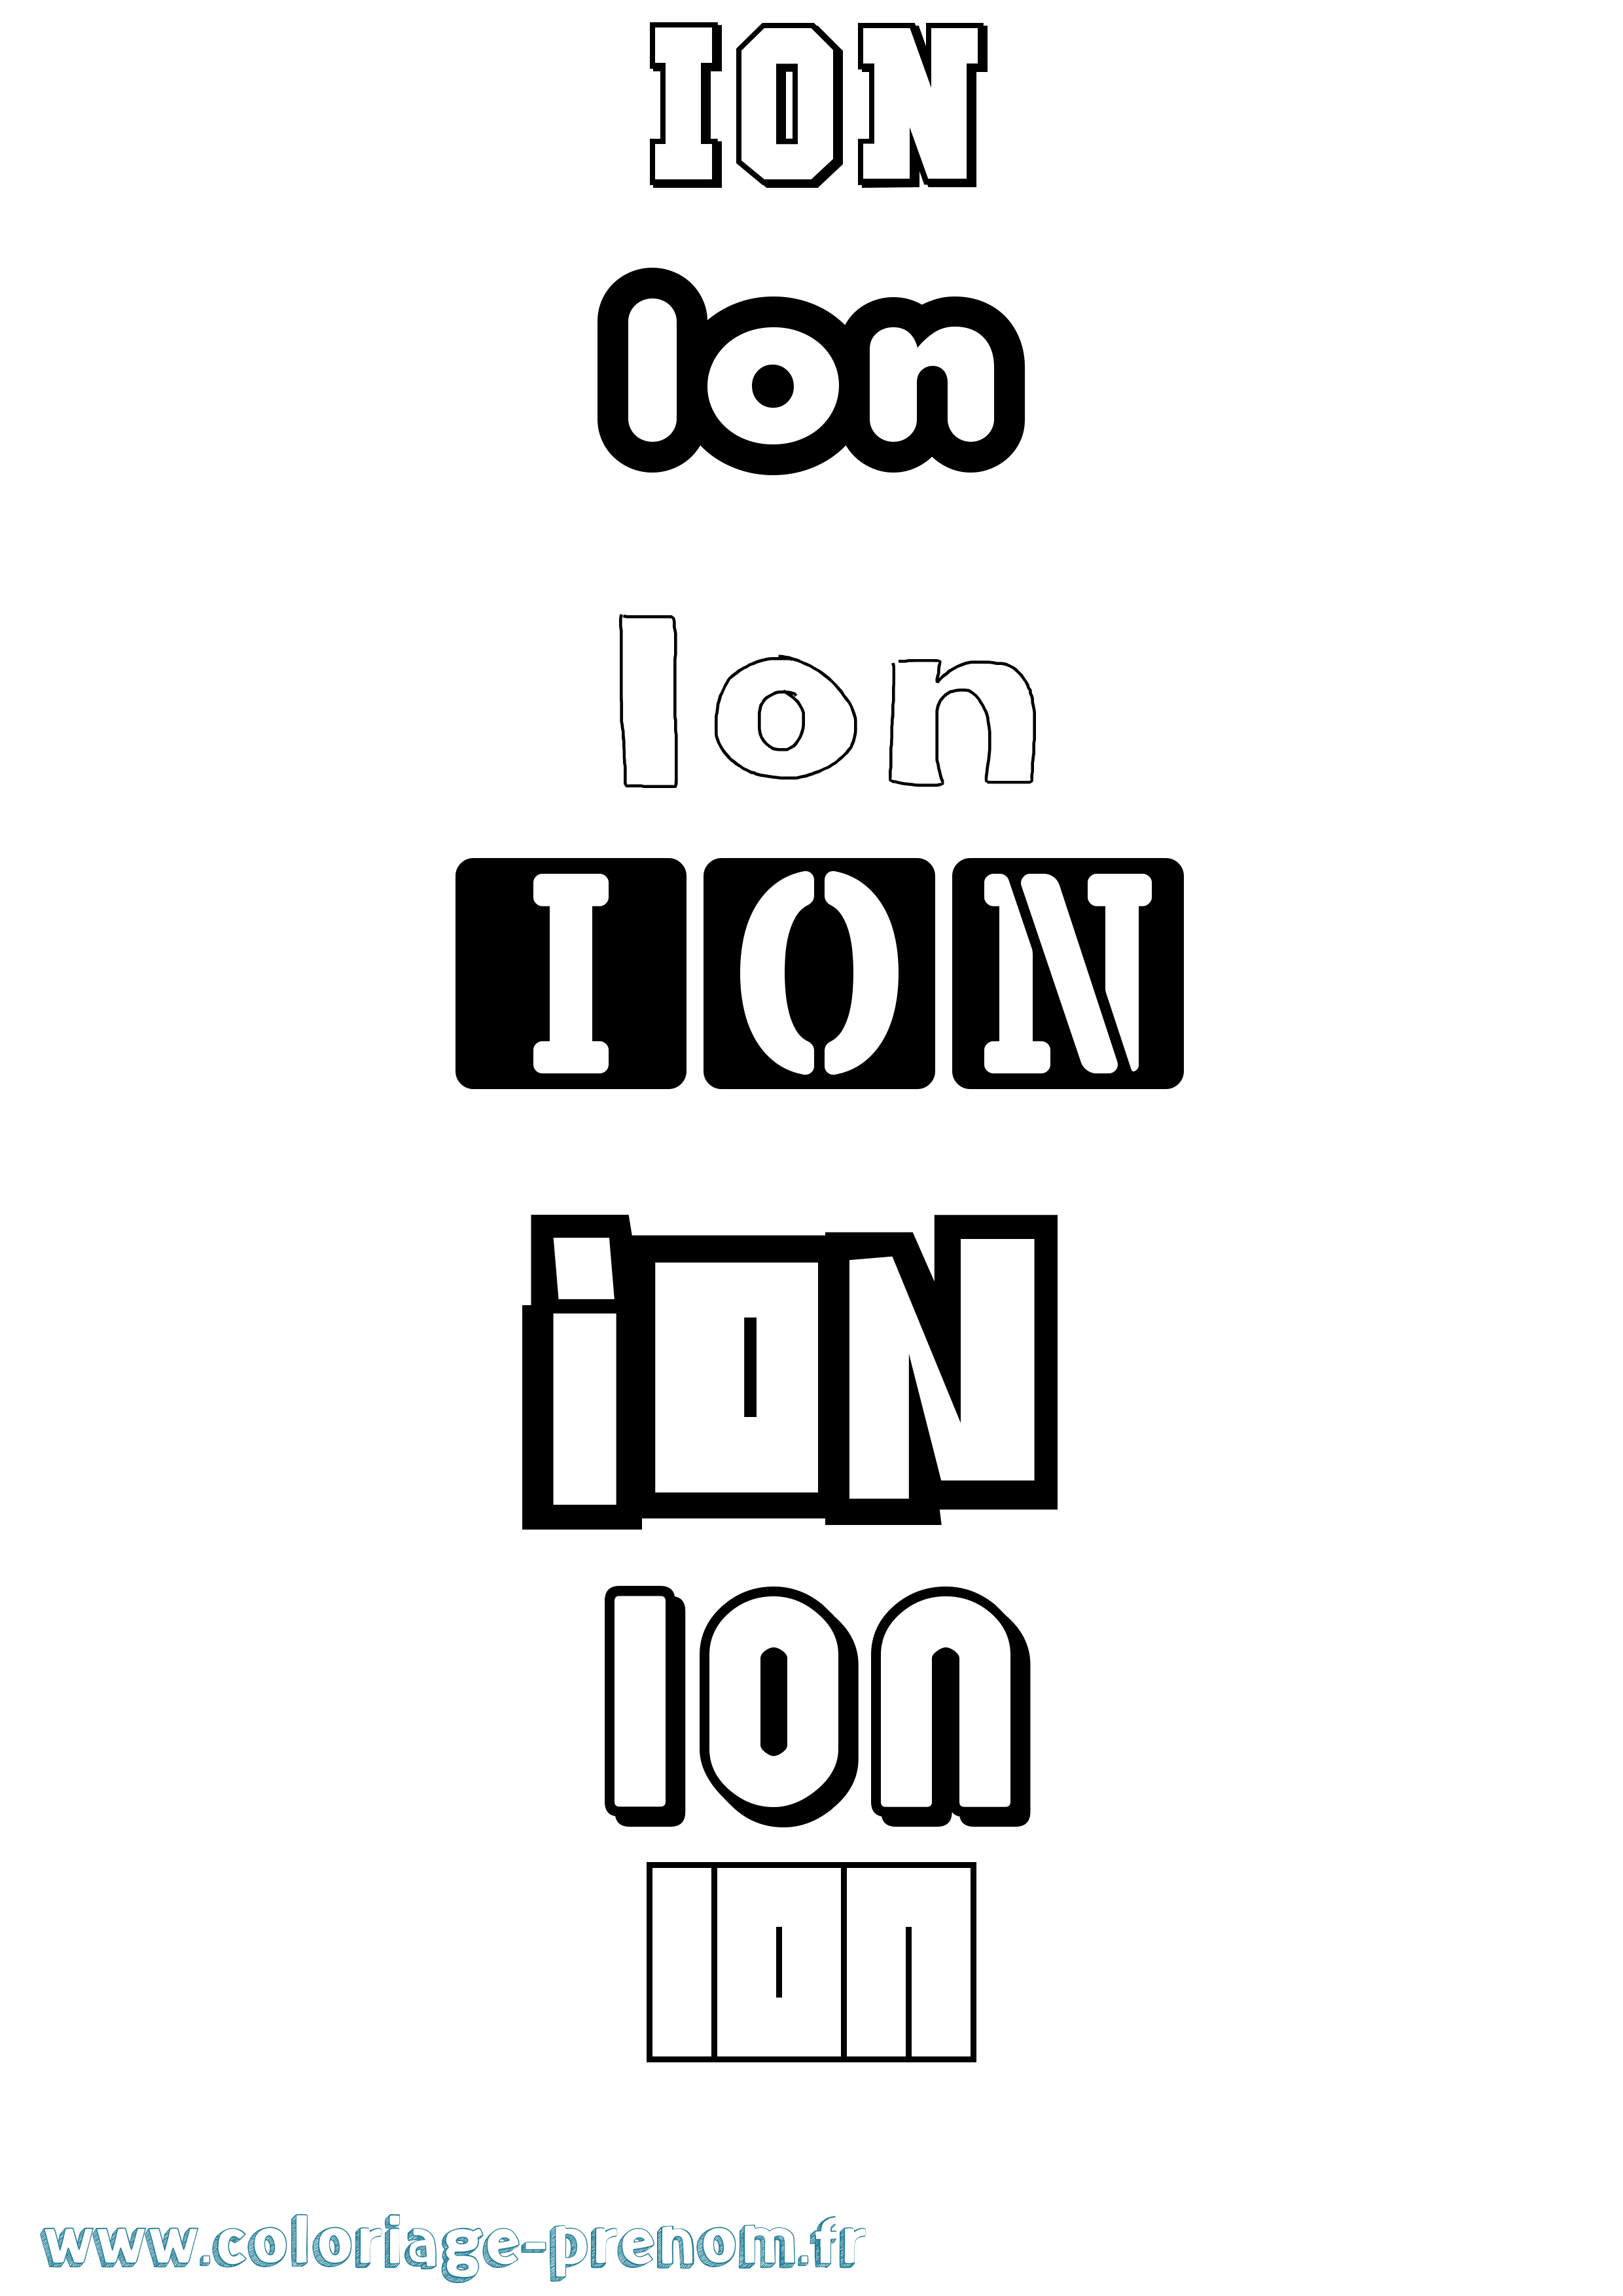 Coloriage prénom Ion Simple